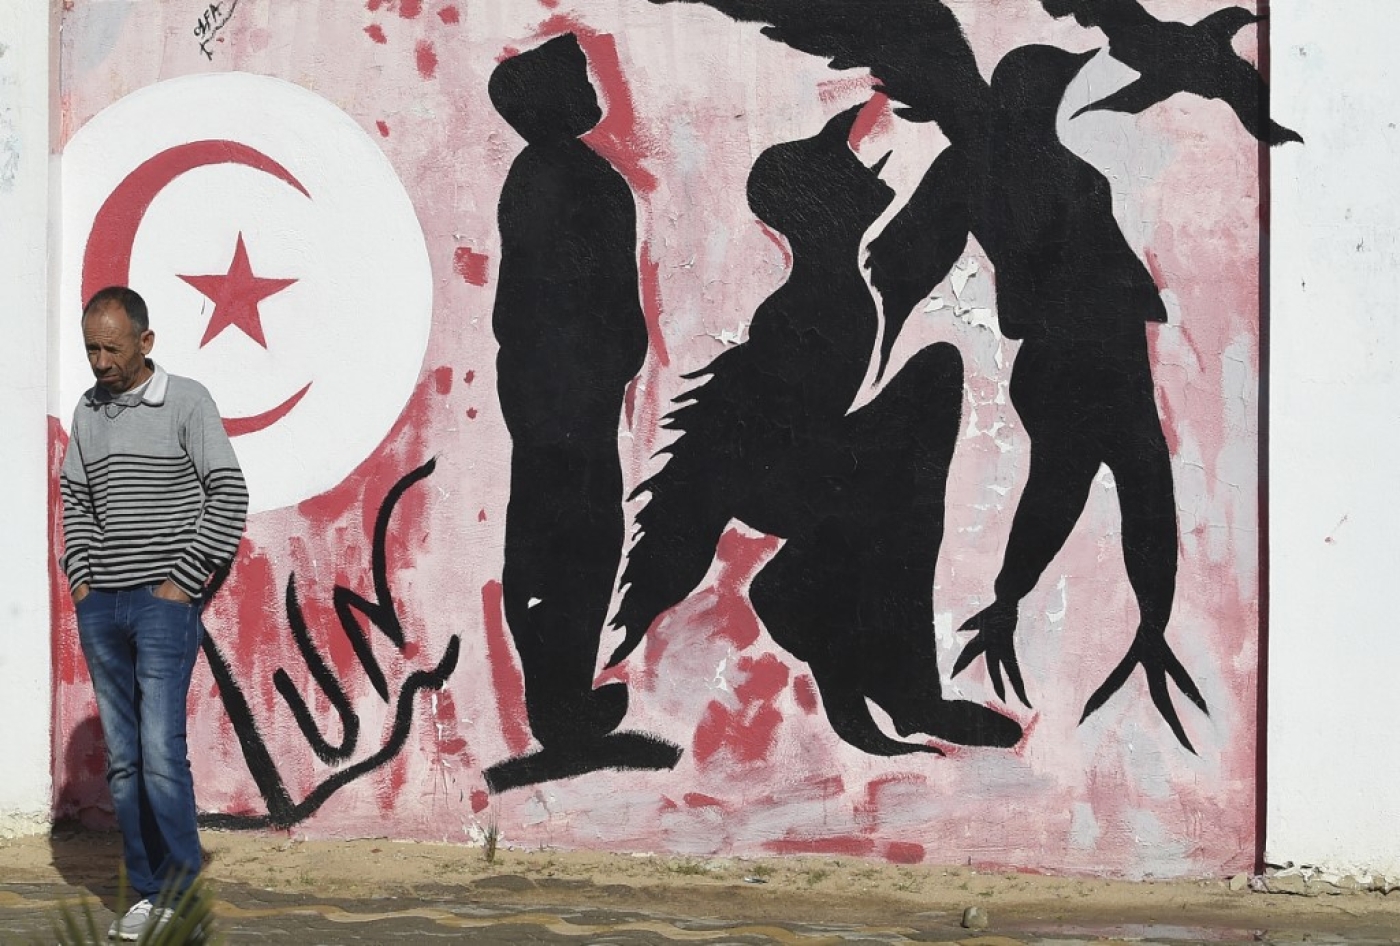 Un Tunisien attend près d’un graffiti représentant les silhouettes d’un homme se métamorphosant en oiseau symbolisant la liberté, place Mohamed Bouazizi, au centre de la ville de Sidi Bouzid le 27 octobre 2020, berceau de la révolution tunisienne de 2011 (AFP)